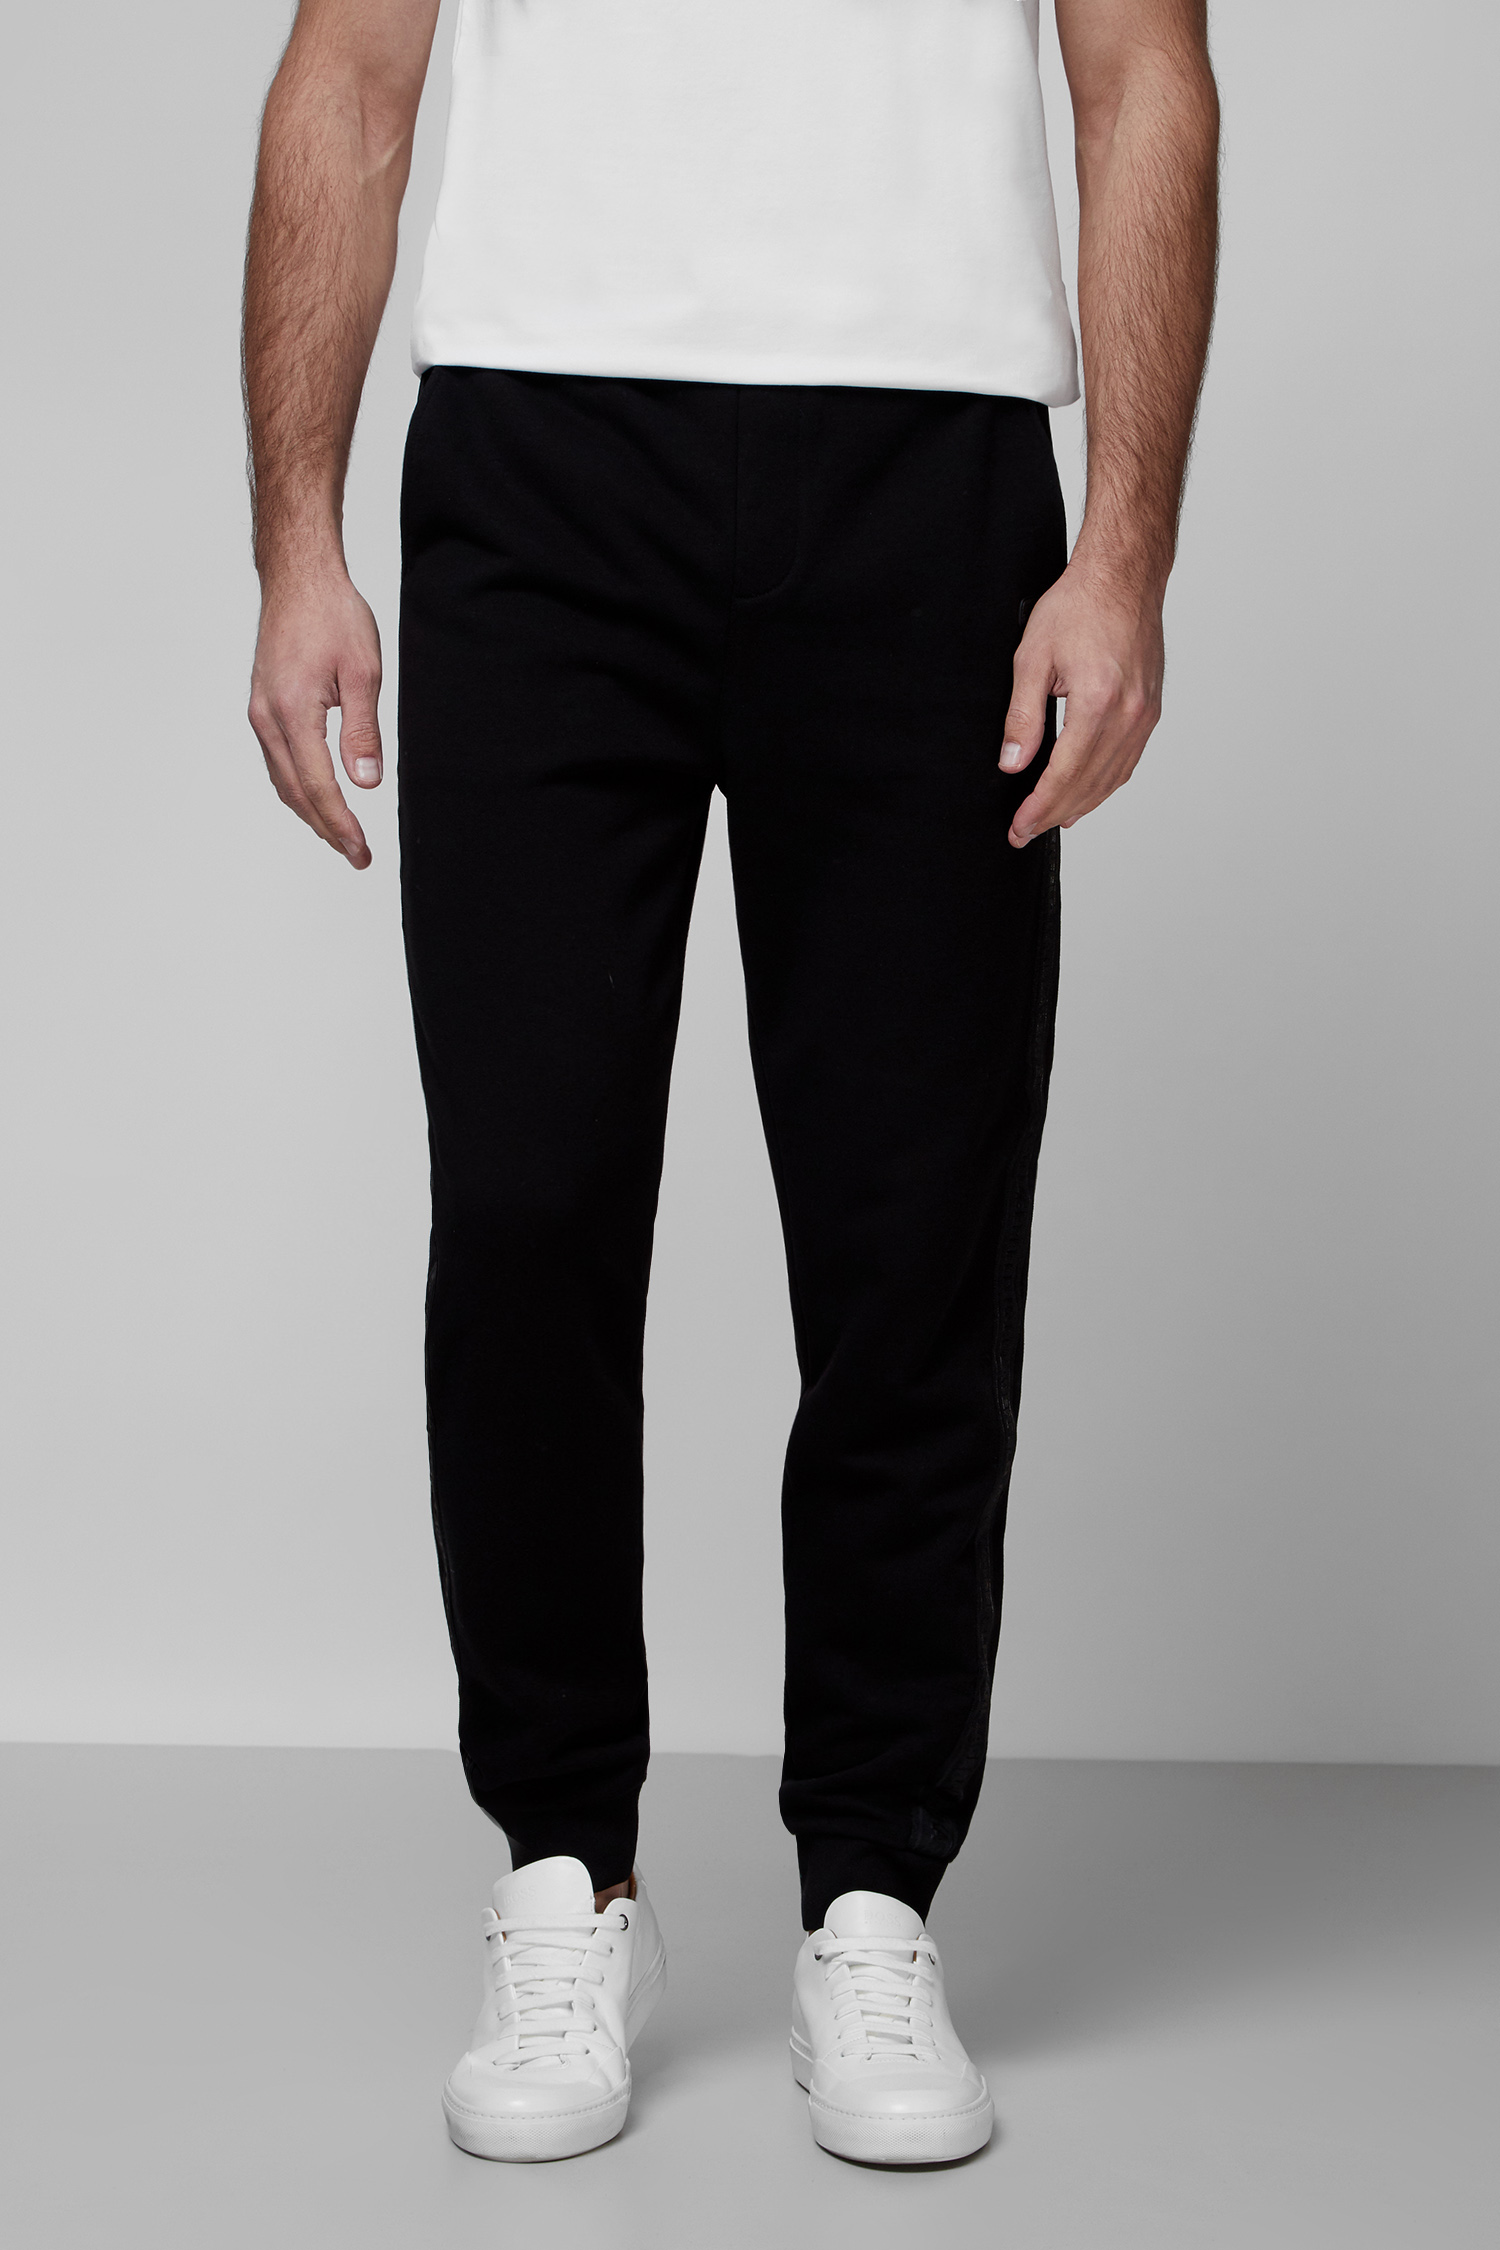 Чоловічі чорні спортивні штани Karl Lagerfeld 512900.705057;990